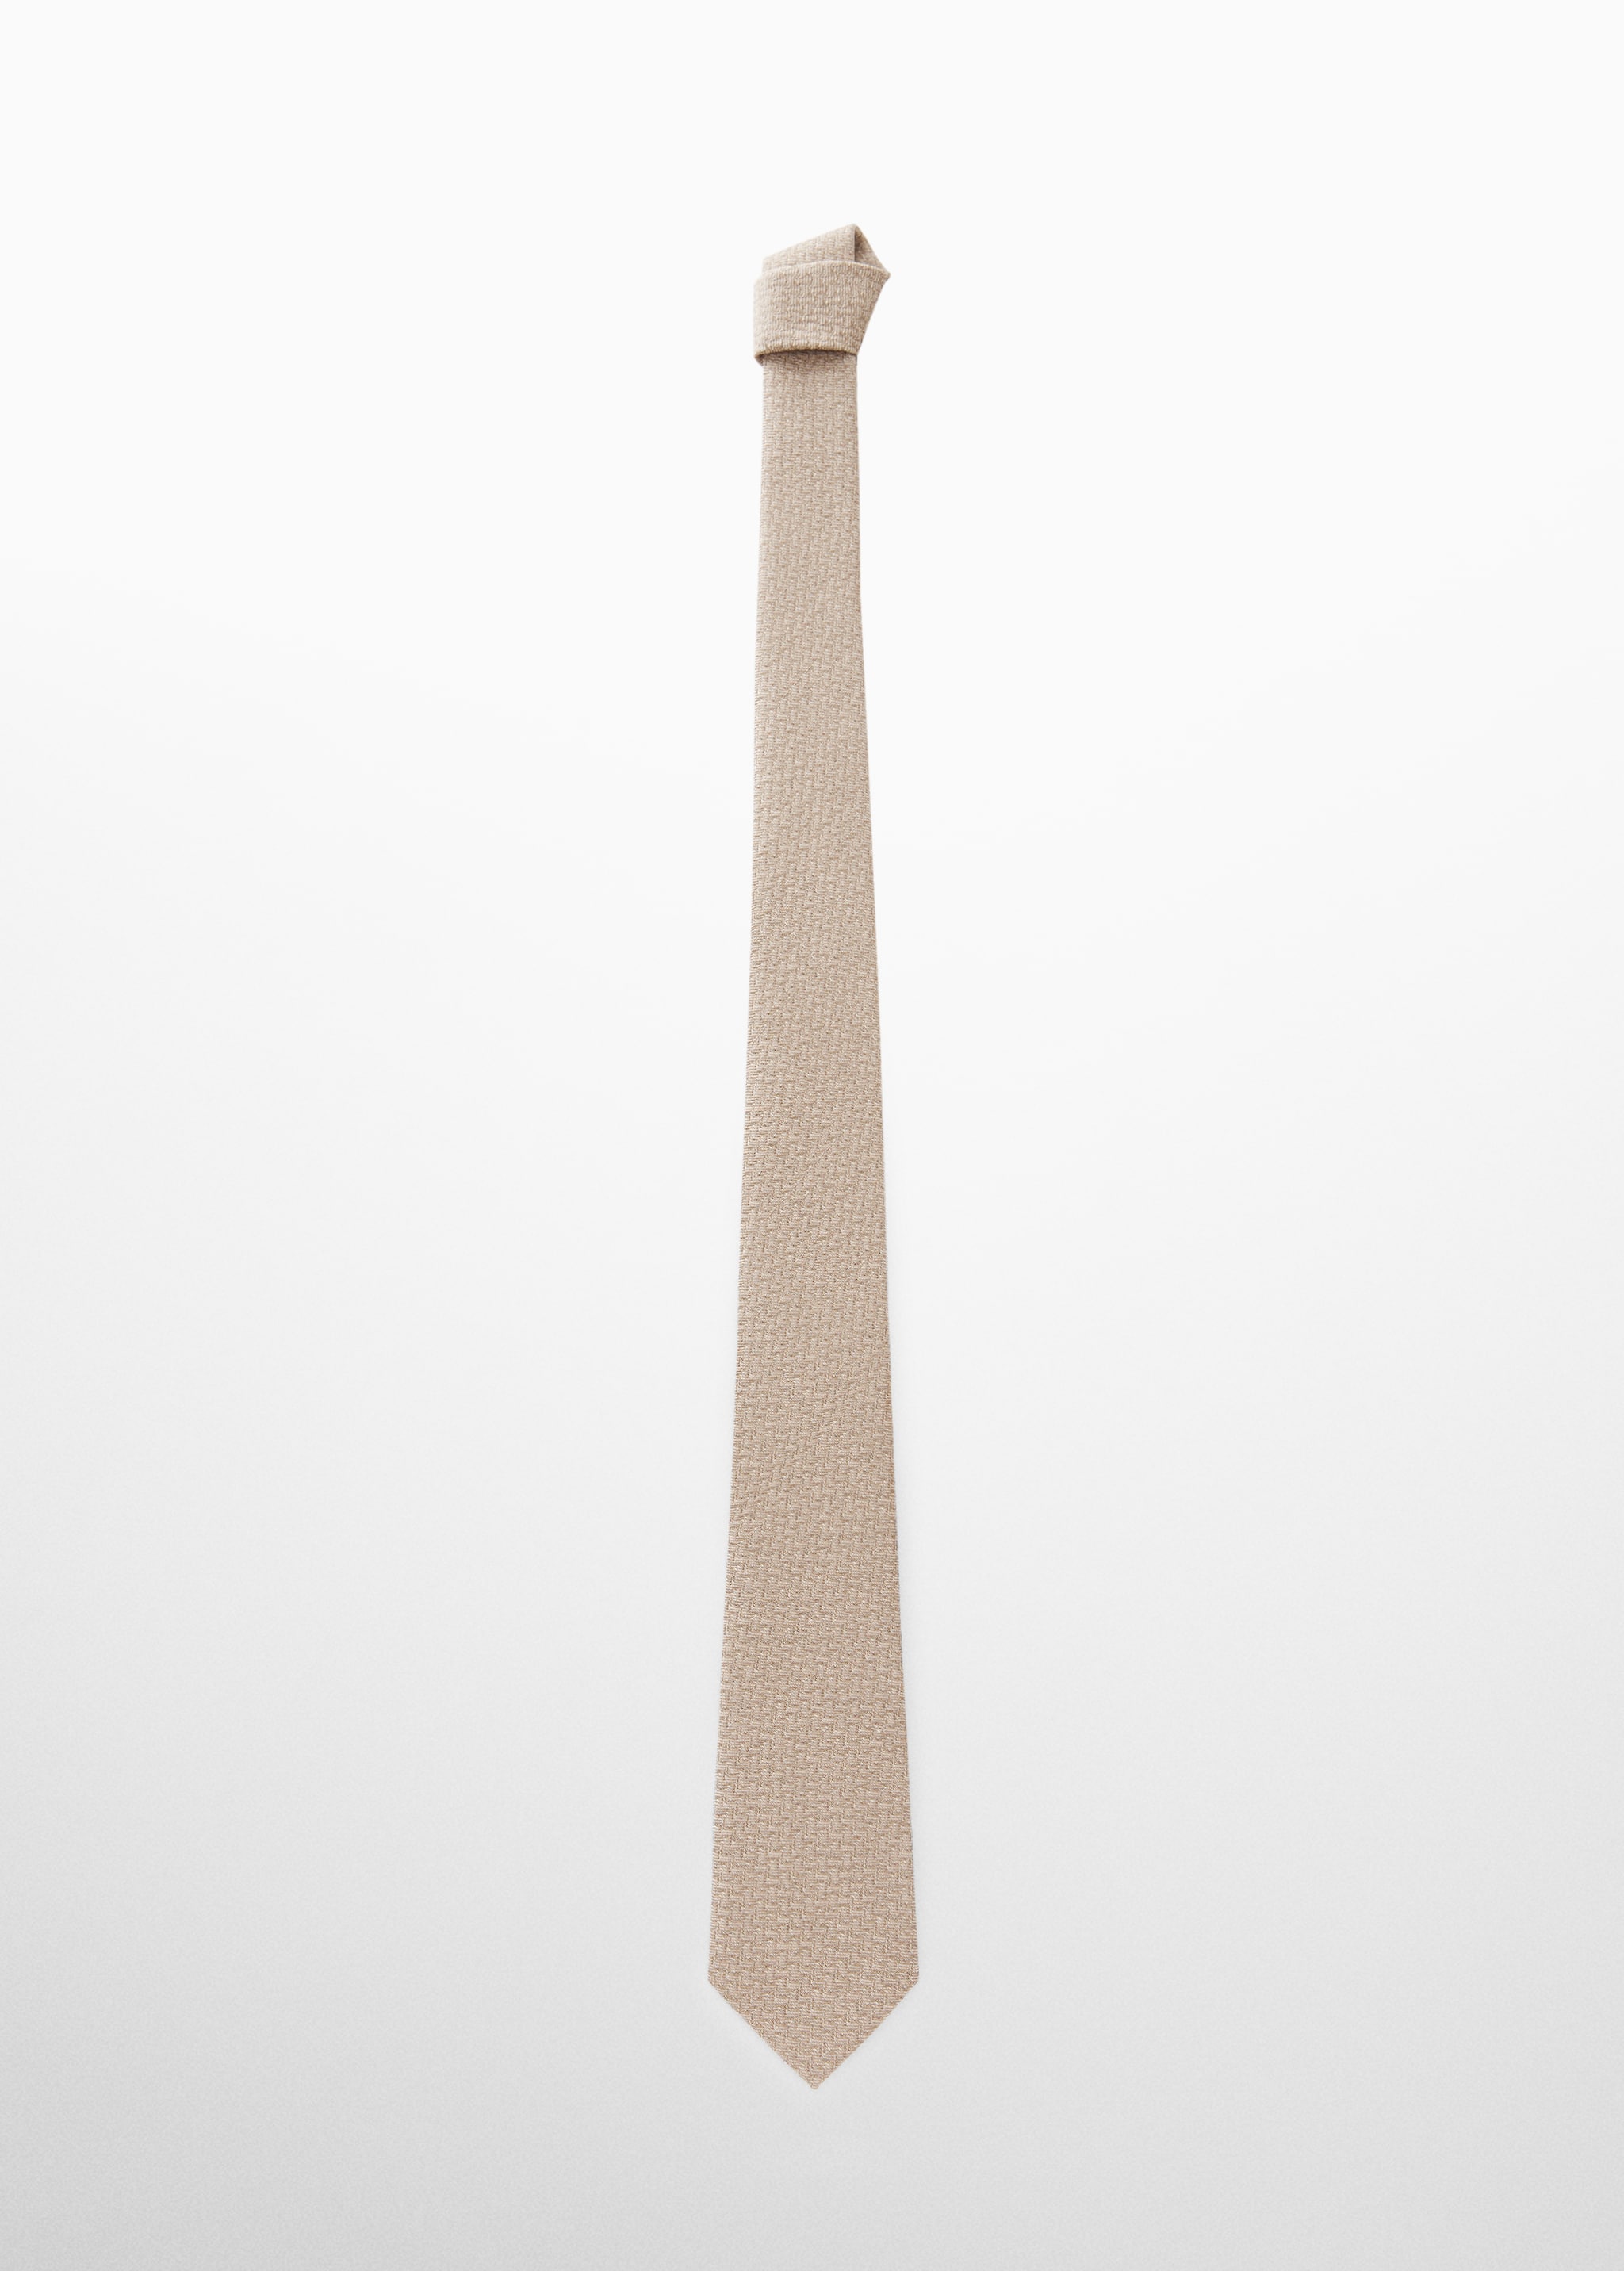 ربطة عنق مصممة من القطن والكتان - منتج دون نموذج